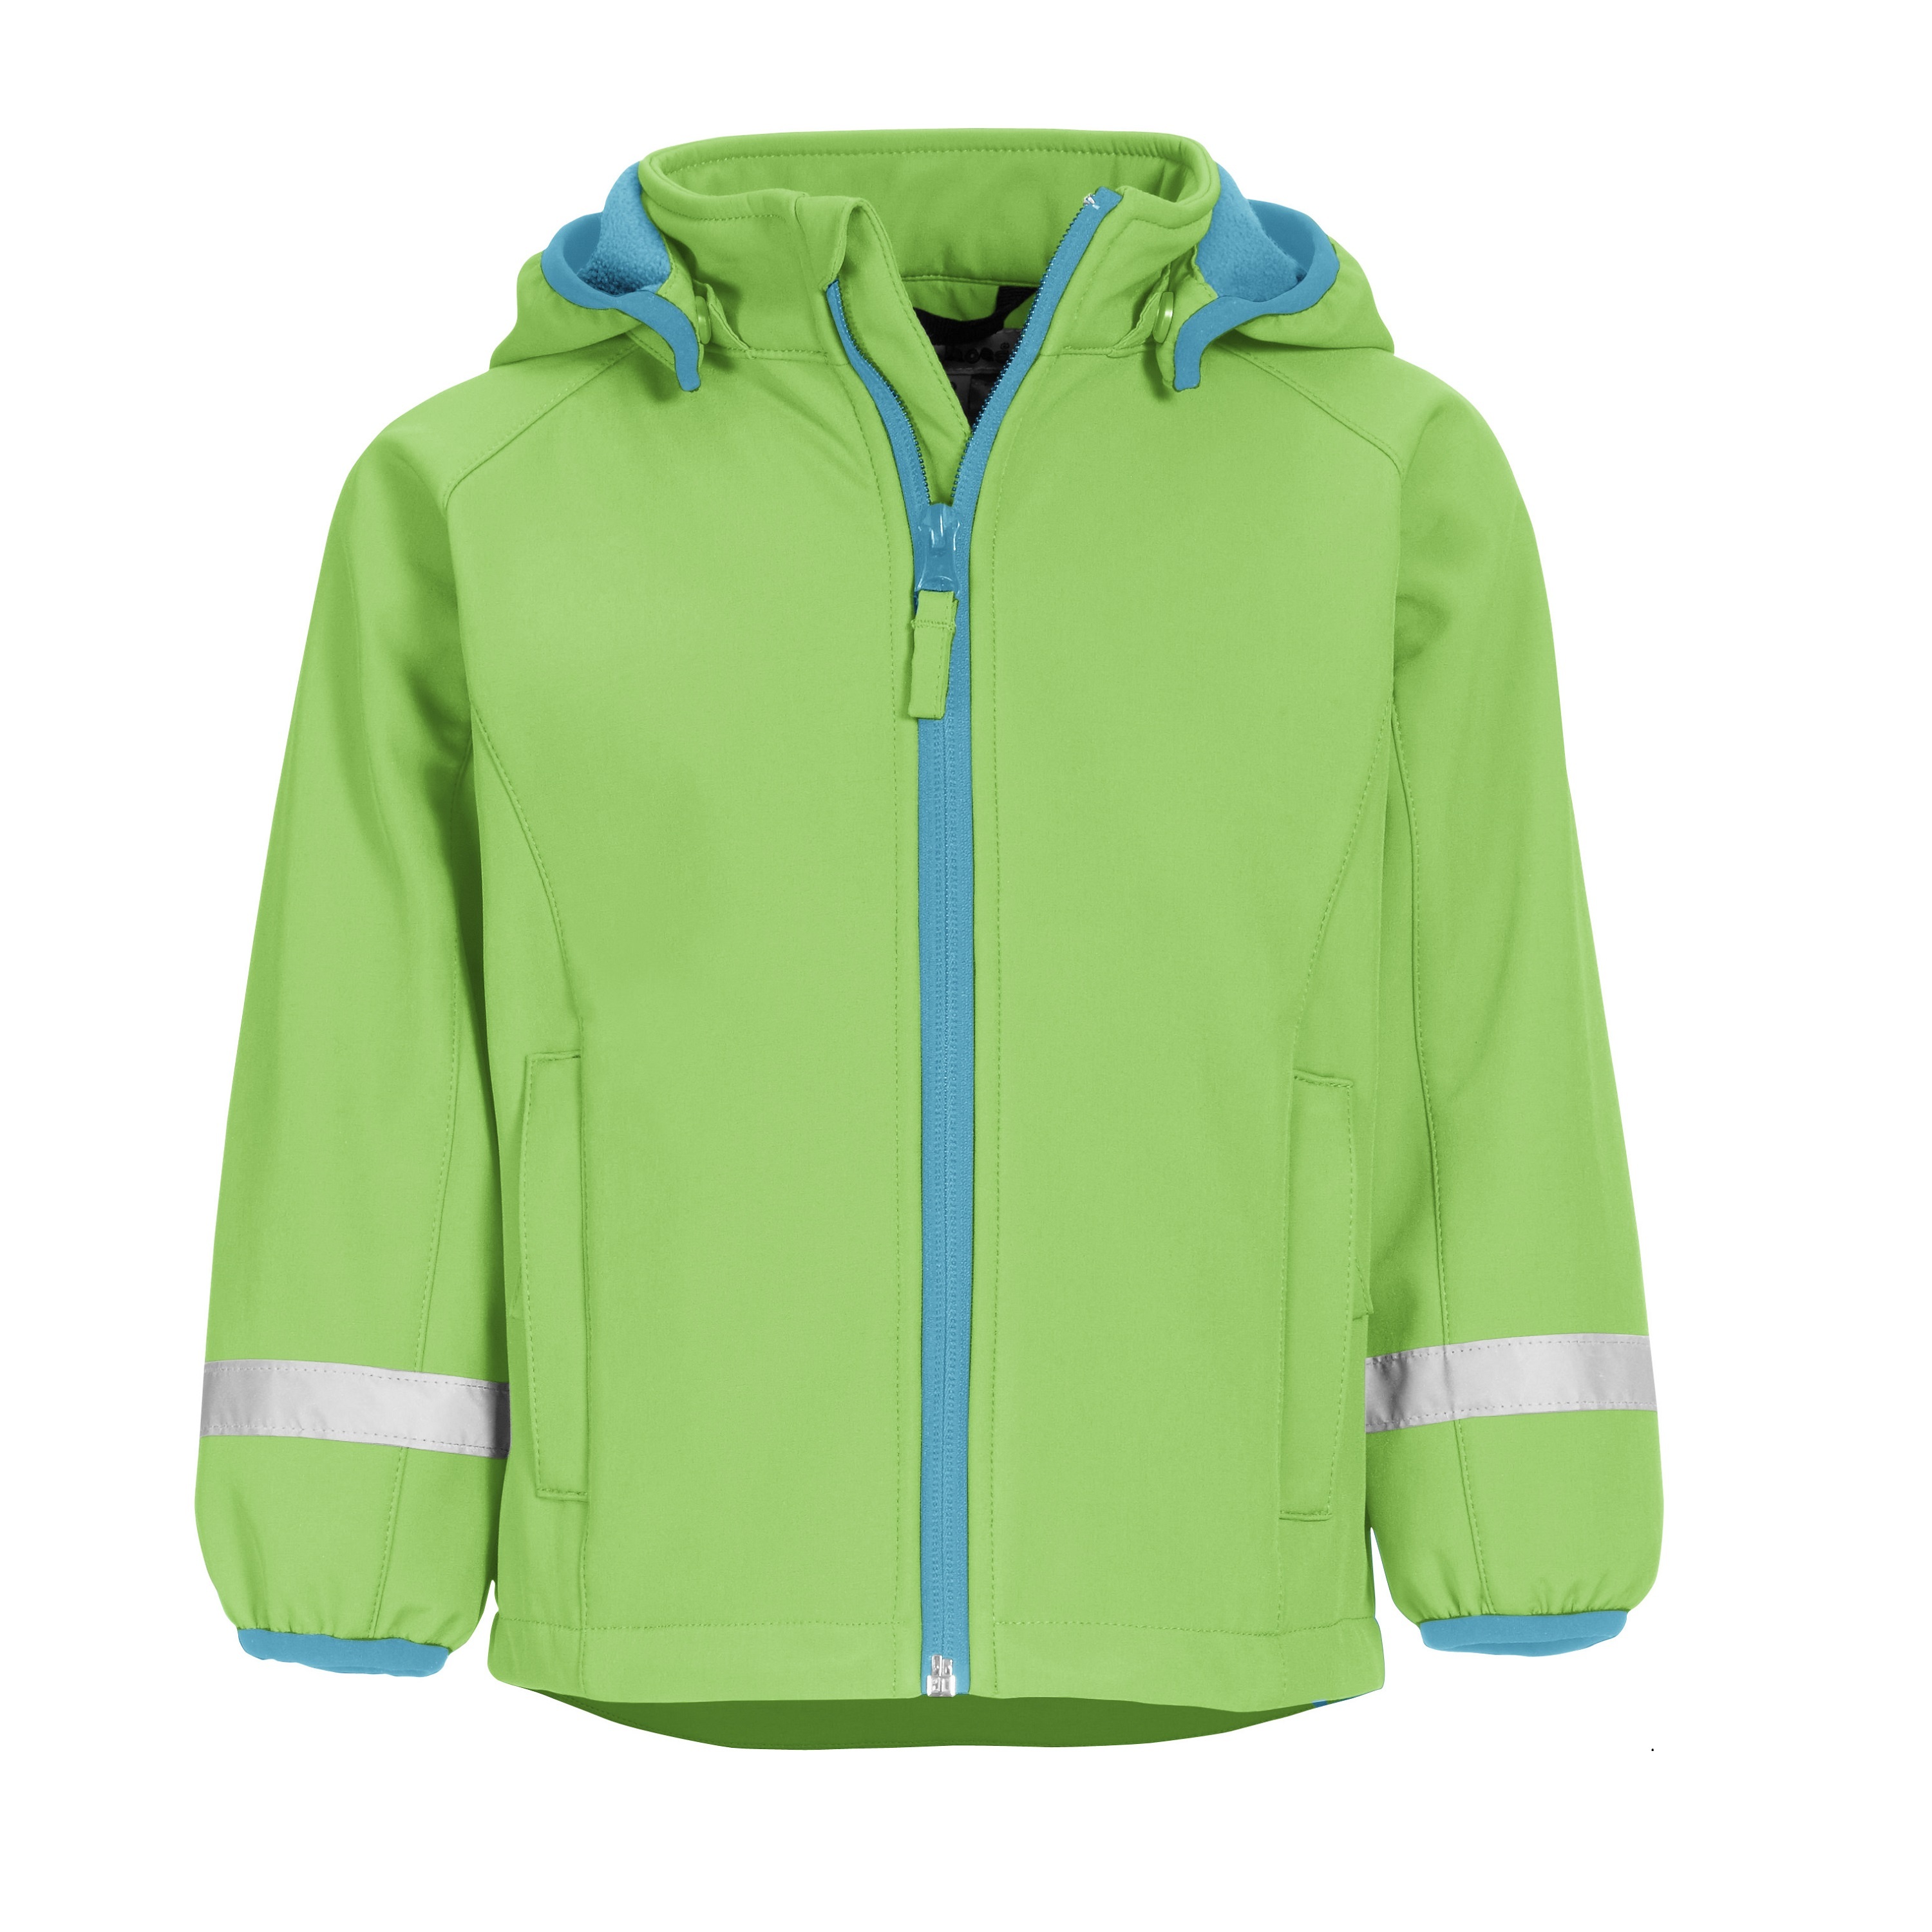 Куртка детская Playshoes 430110, зеленый, 98 зеленая мембранная куртка herno детская